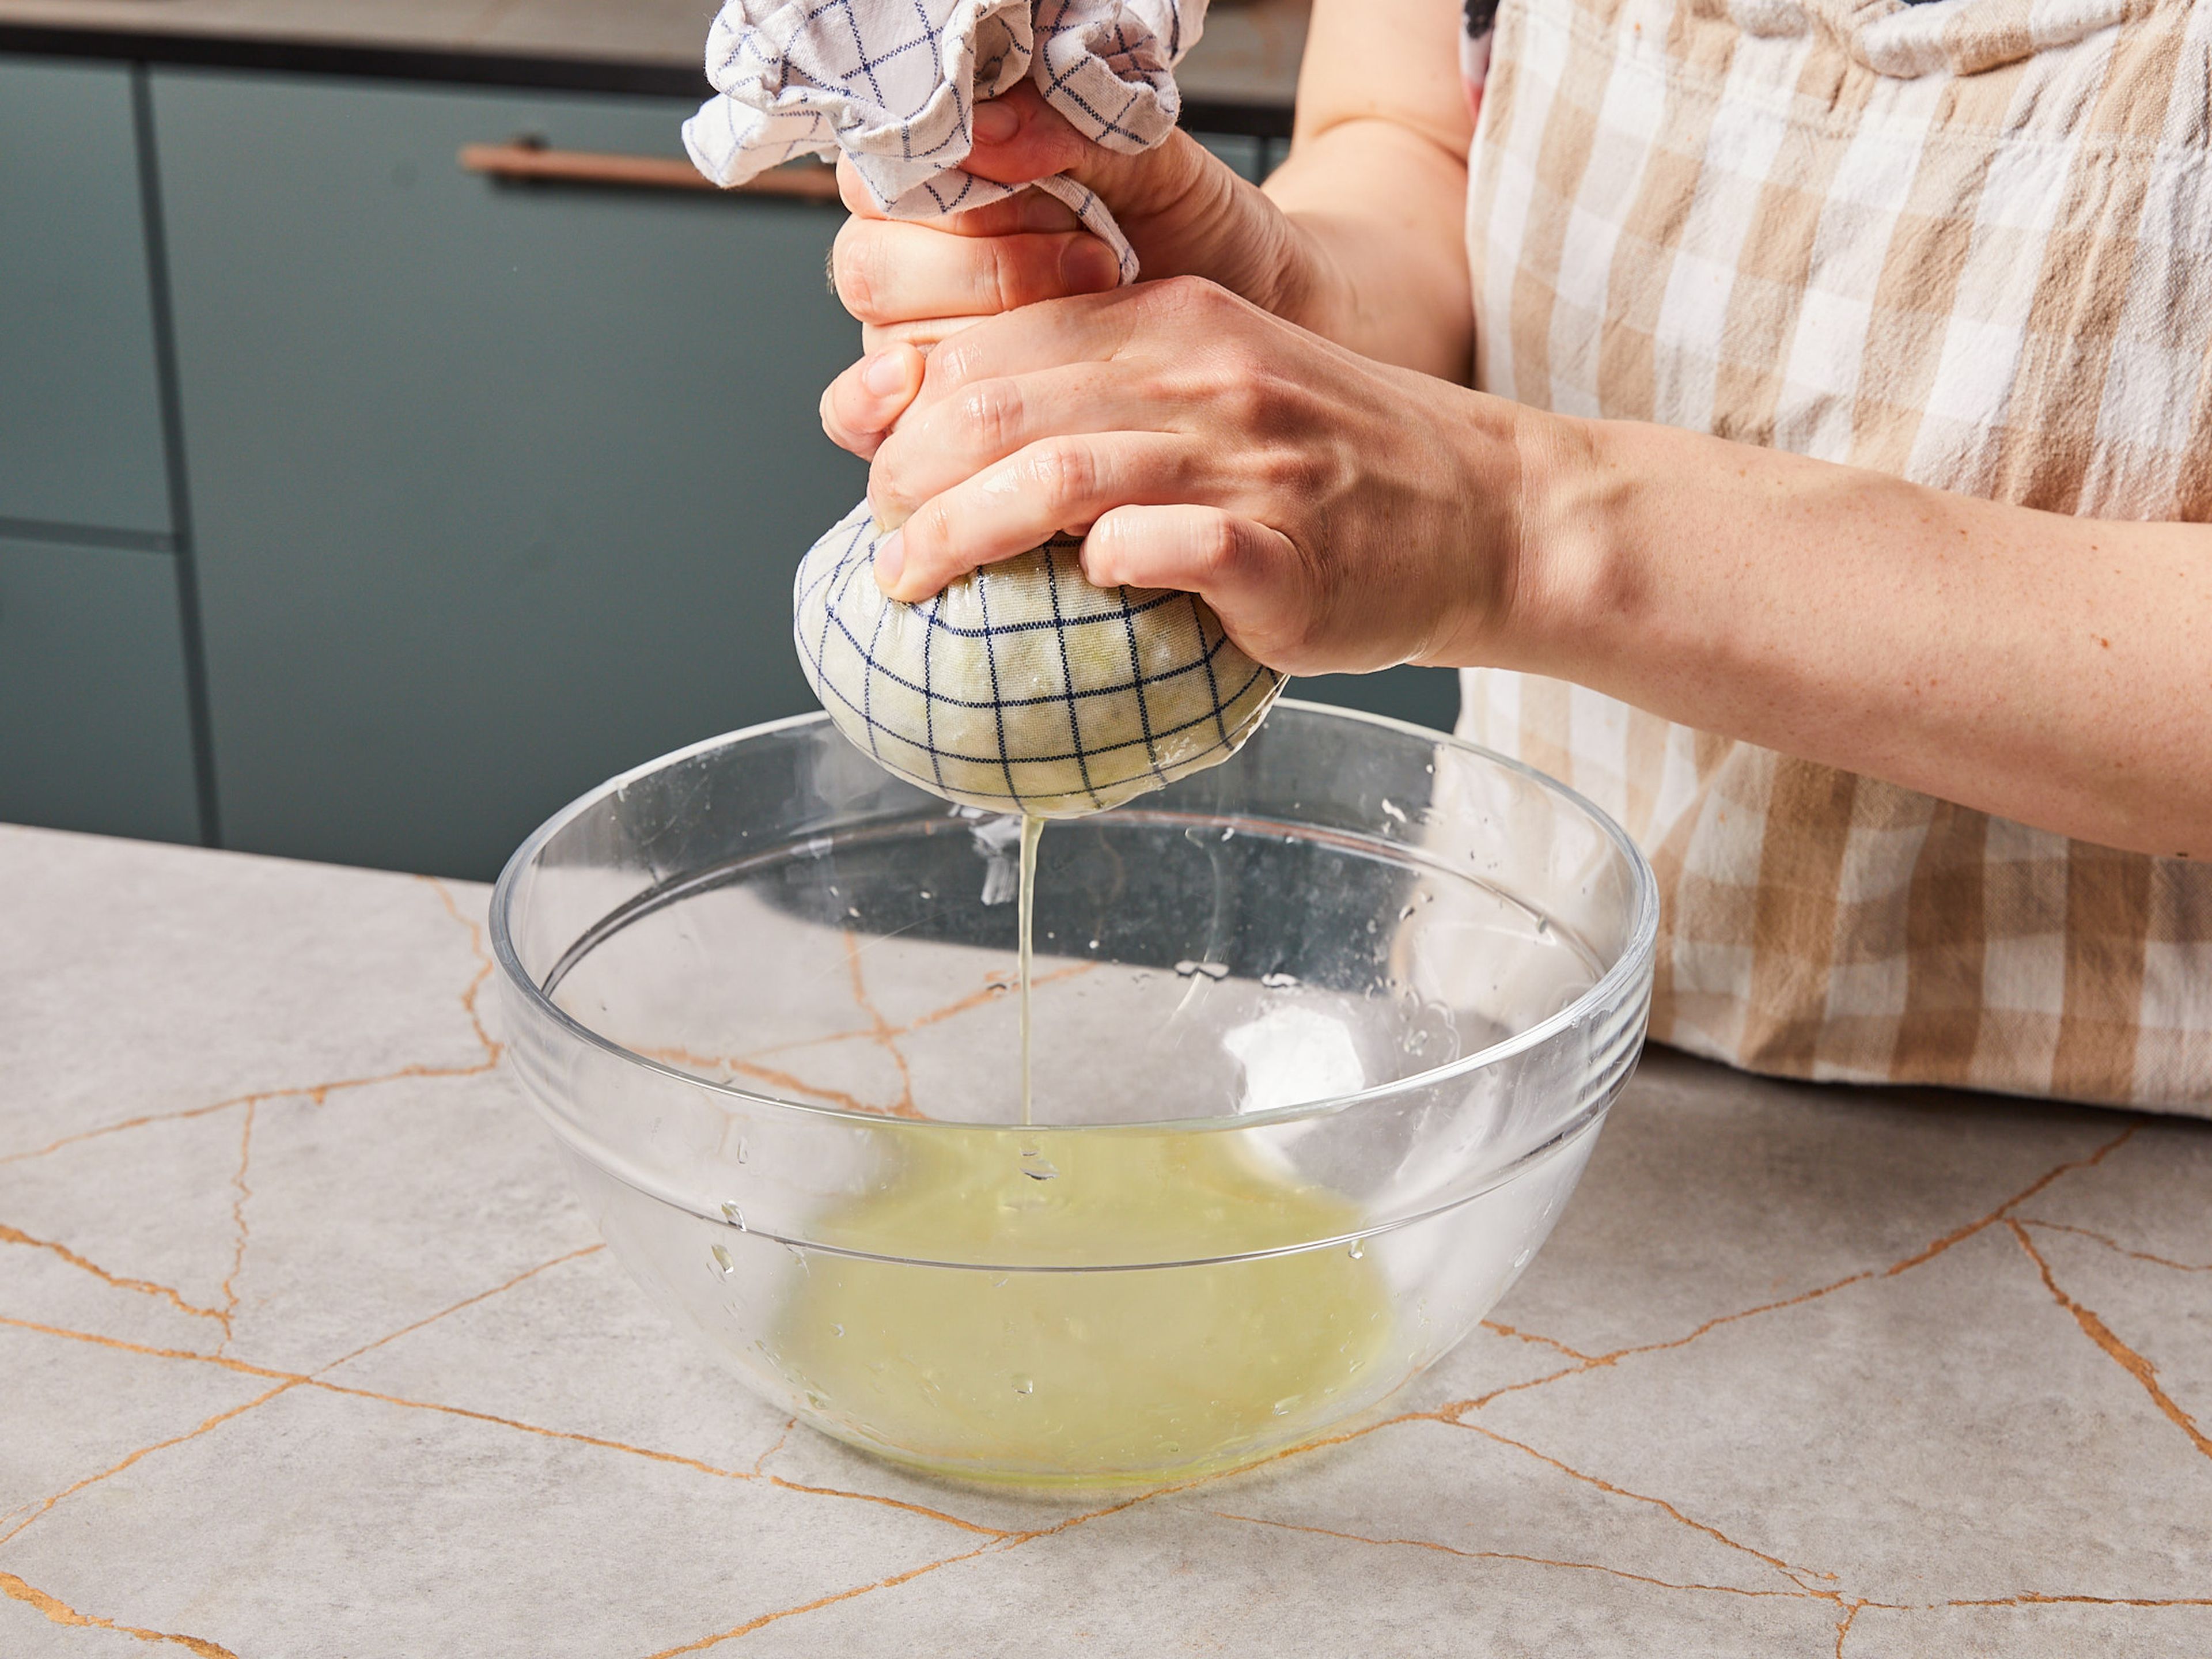 Abgetropfte Zucchini auf ein sauberes Küchentuch legen und so viel Flüssigkeit wie möglich ausdrücken. Zu den anderen Zutaten in die Schüssel geben und gut vermischen.